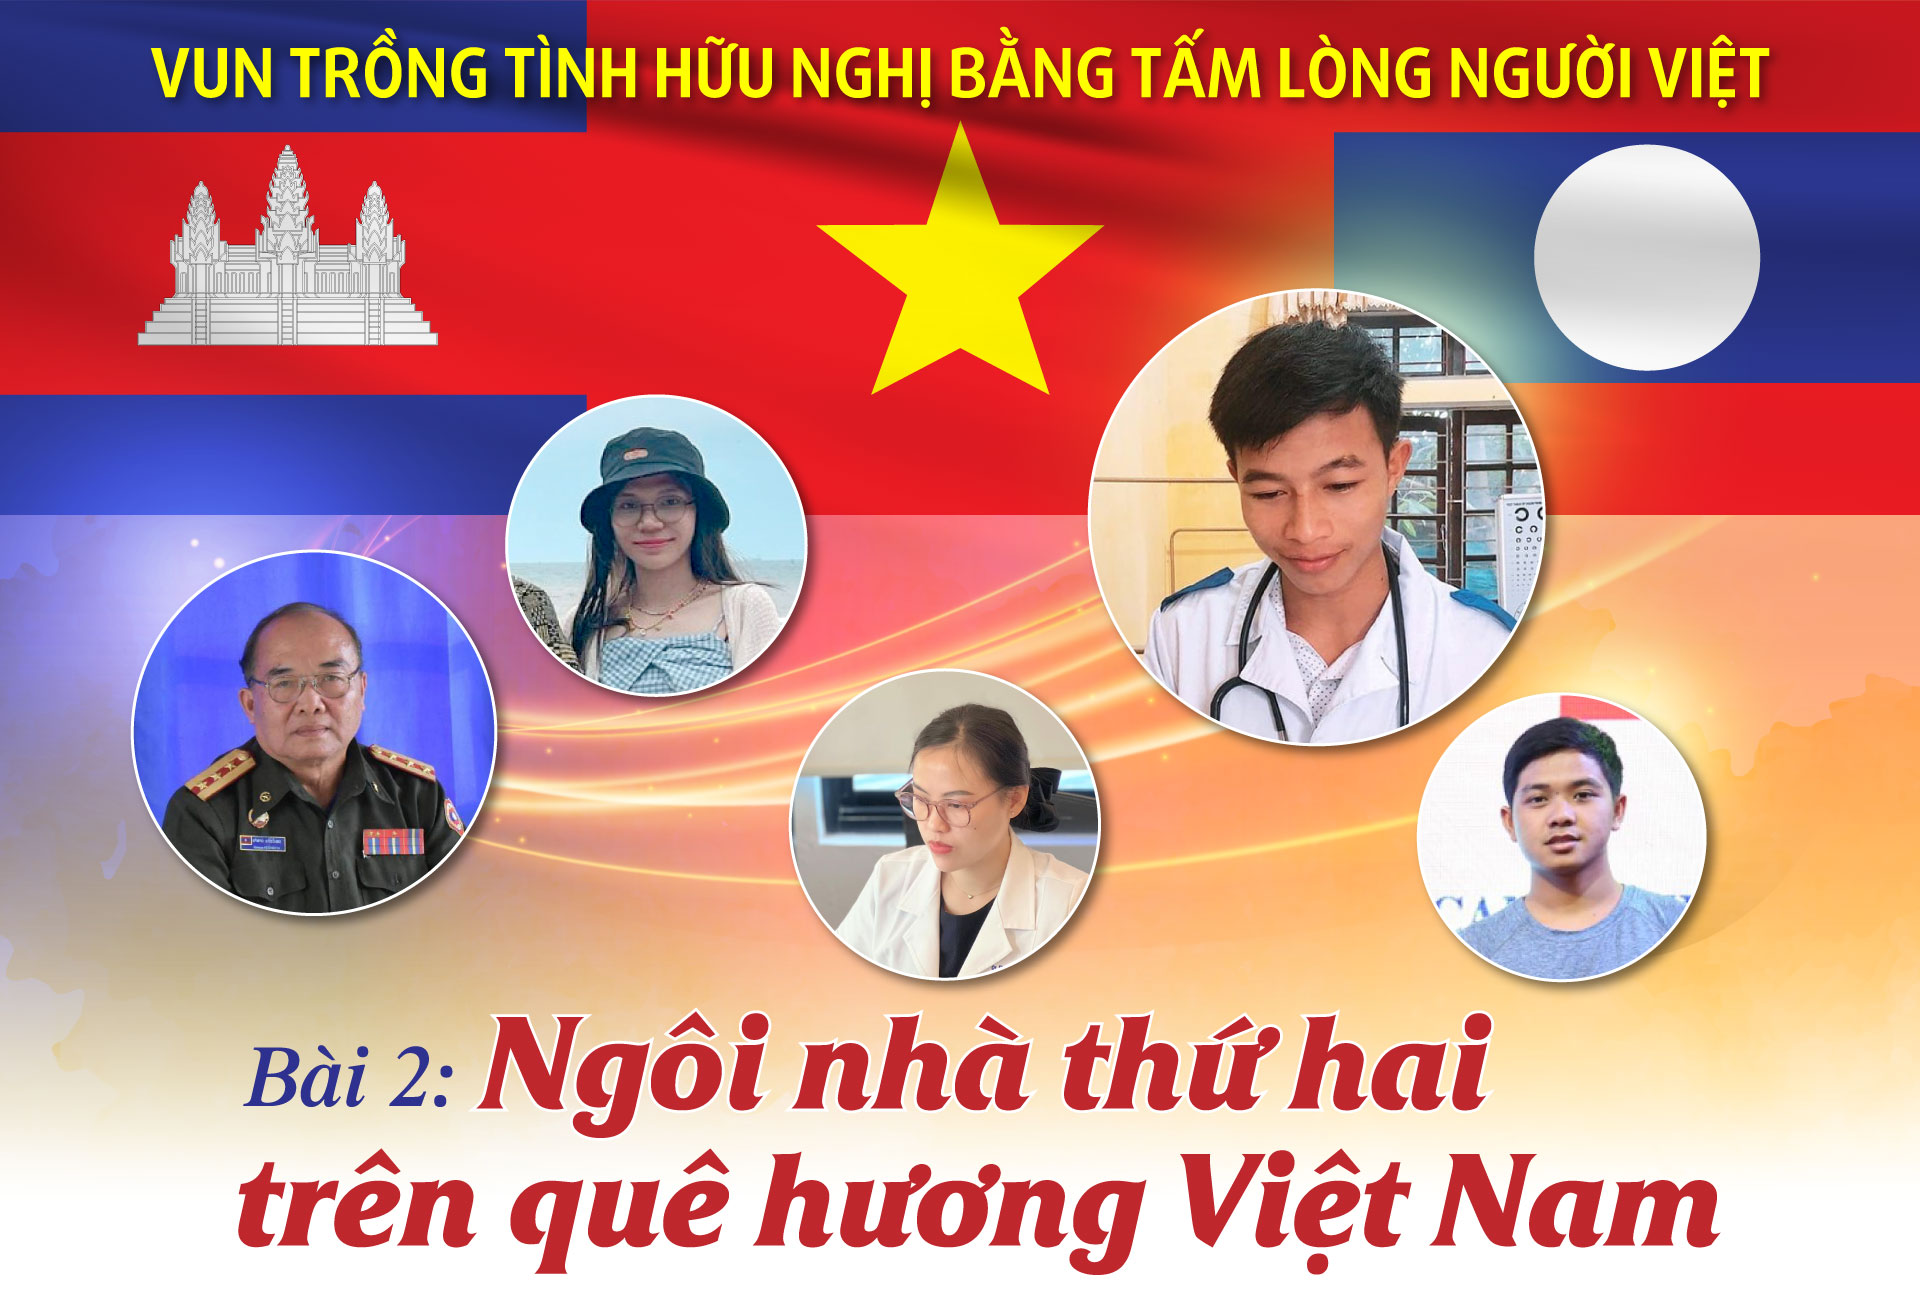 Vun trồng tình hữu nghị bằng tấm lòng người Việt - Bài 2: Ngôi nhà thứ hai trên quê hương Việt Nam